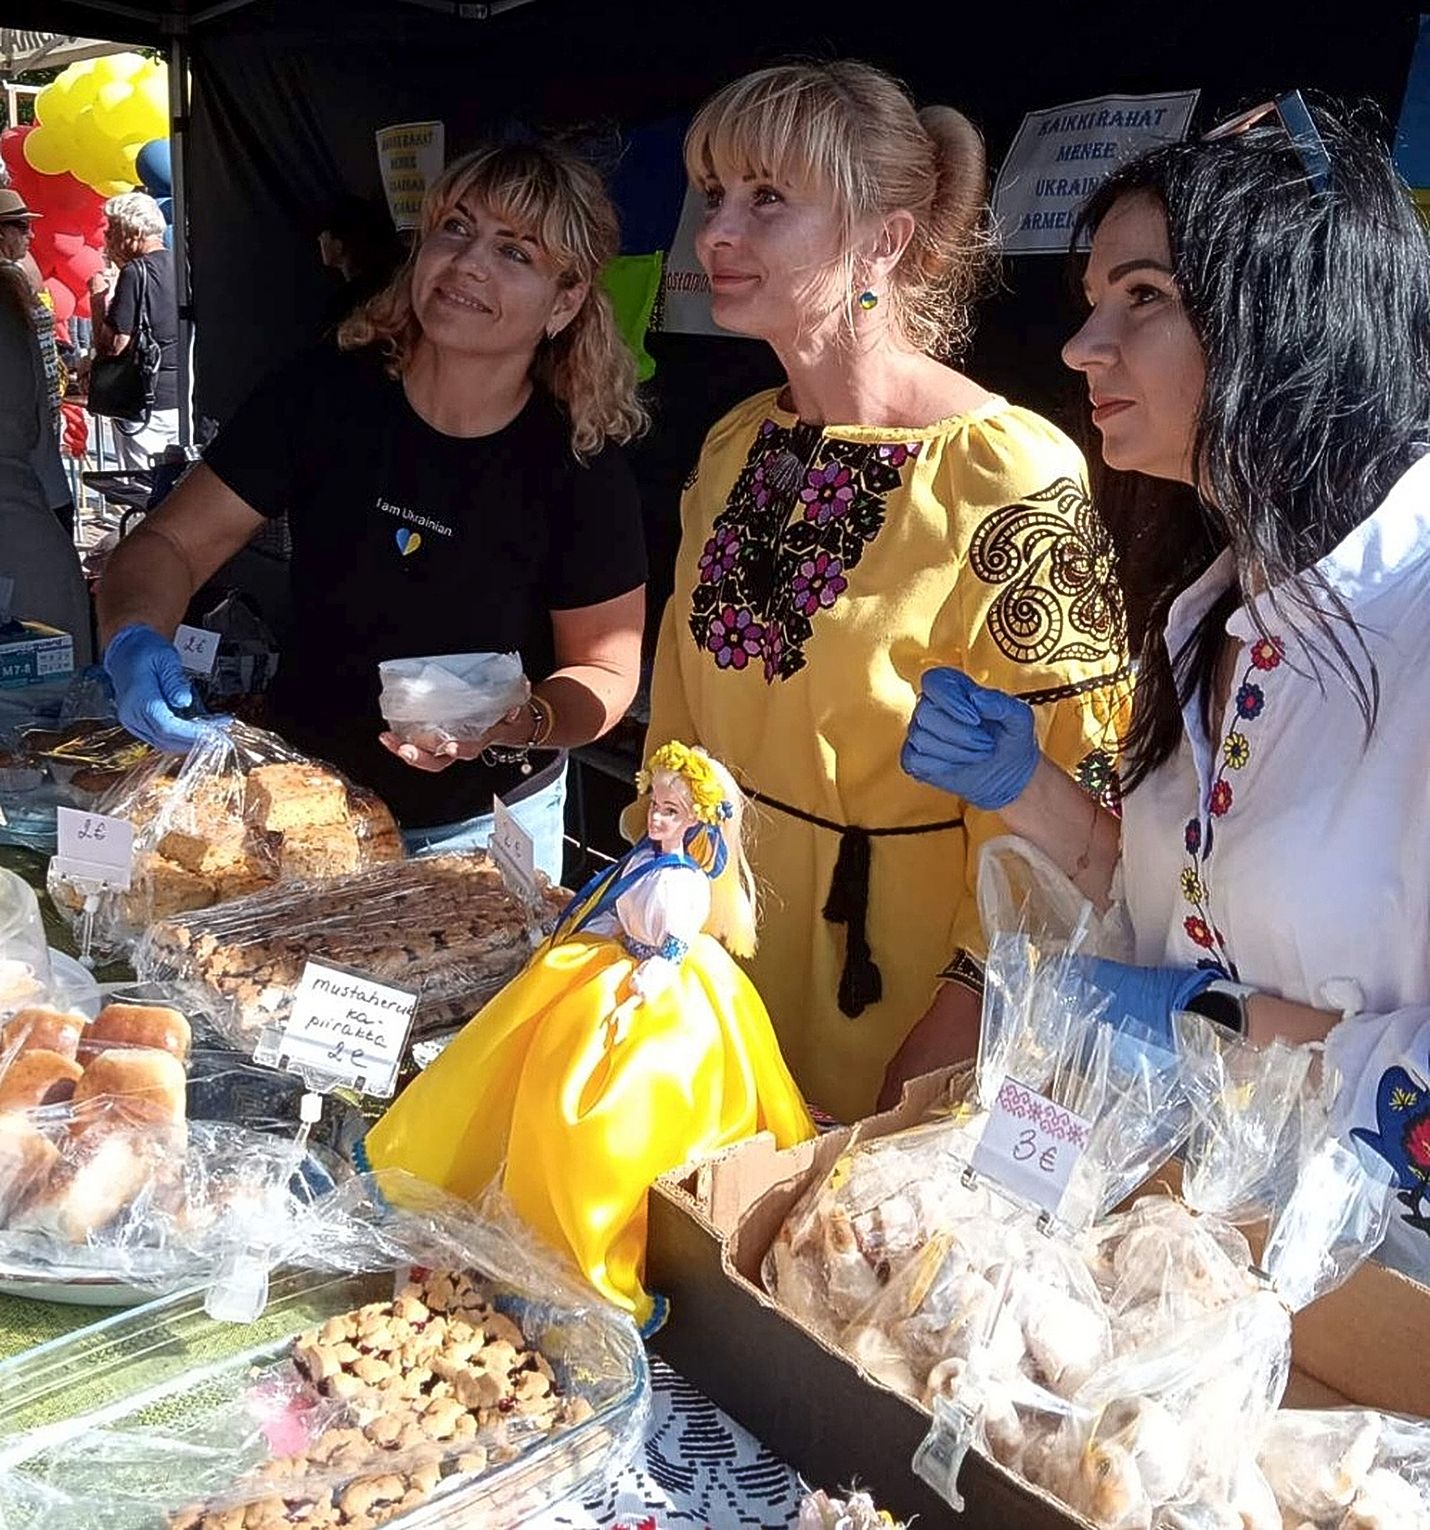 Viktoria Hulenko (kesk.) oli viime kesänä Ira Tsabanovan ja Lesia Pustomytenkon kanssa Uudessakaupungissa myymässä leivonnaisia. Myynnistä saadut varat käytettiin Ukrainan tukemiseen. 
